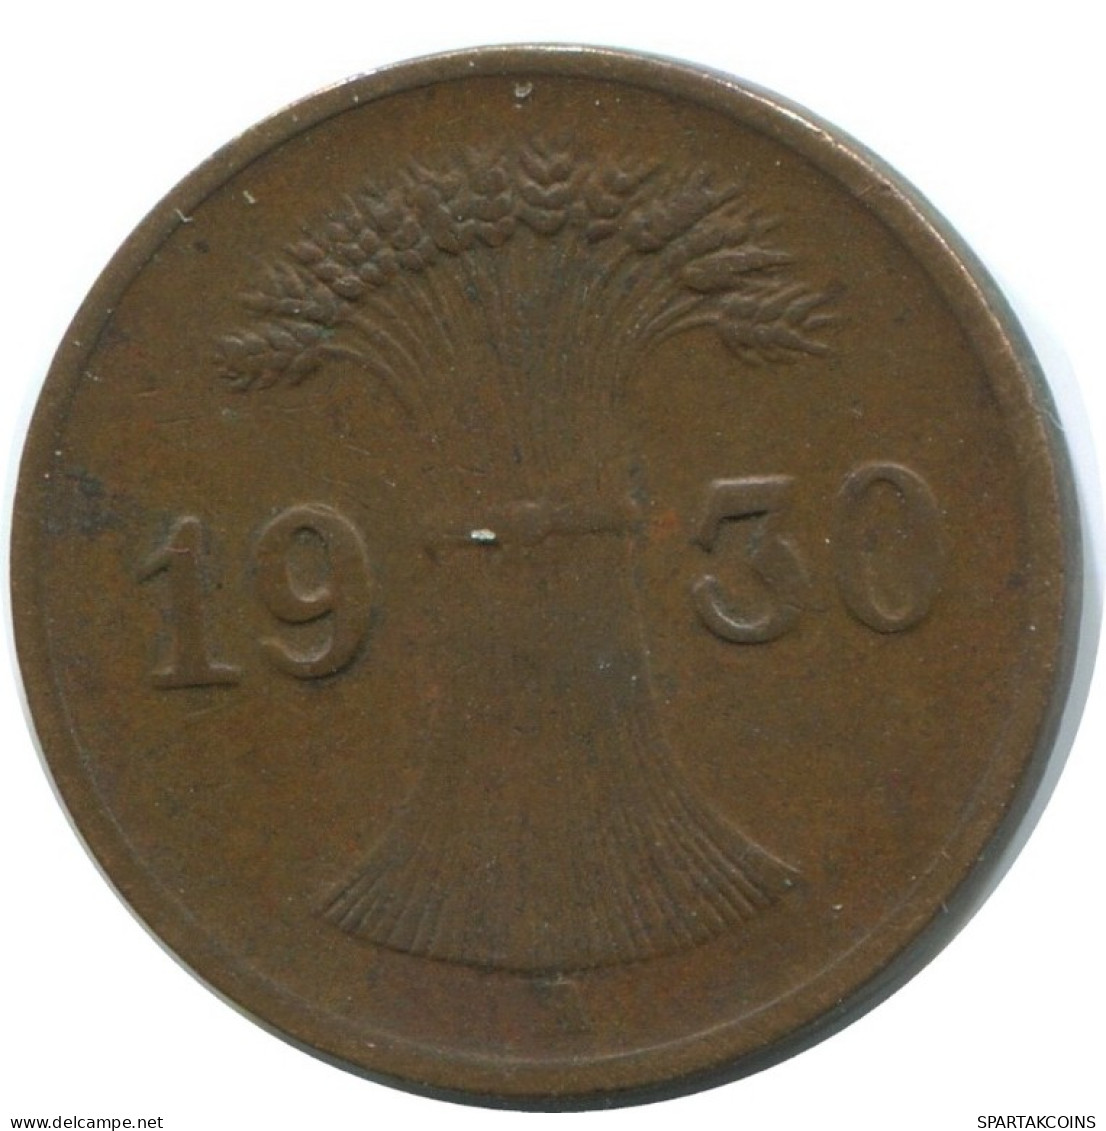 1 REICHSPFENNIG 1930 A GERMANY Coin #AD441.9.U.A - 1 Rentenpfennig & 1 Reichspfennig